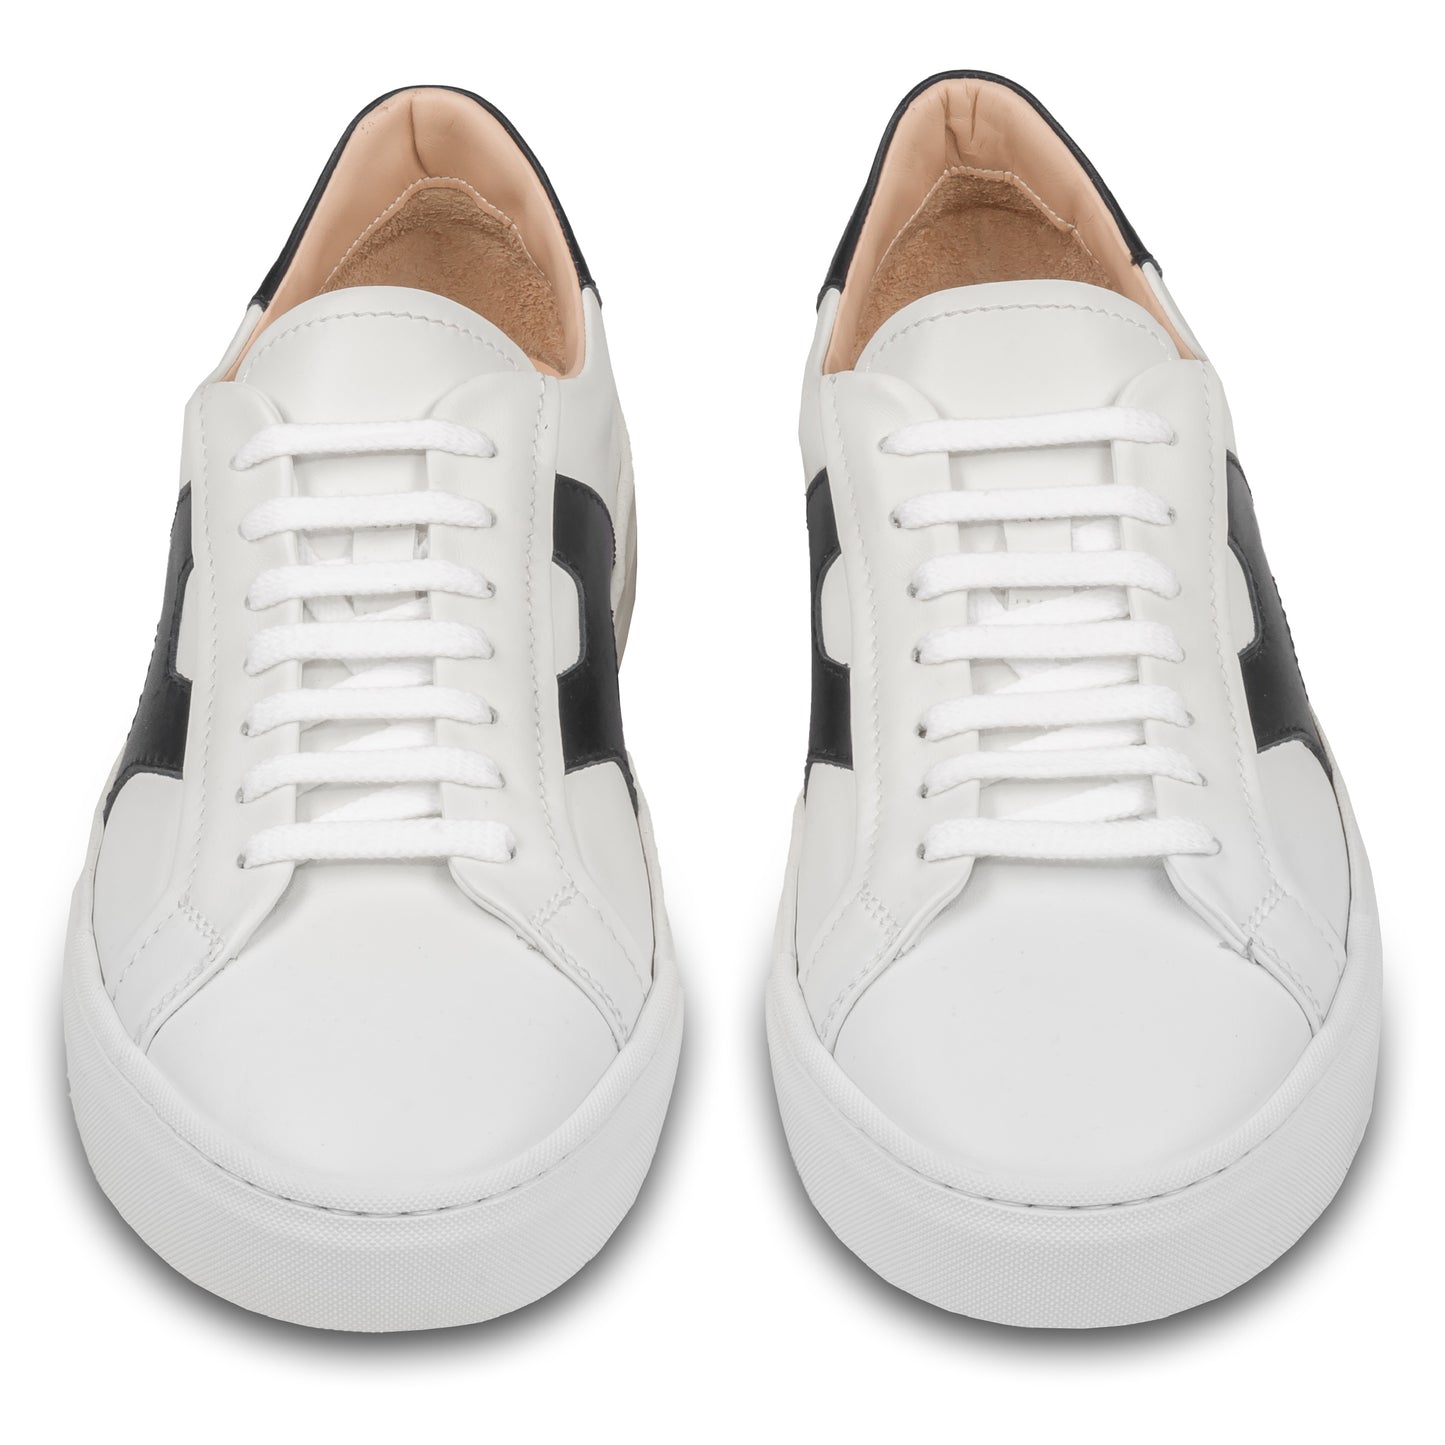 Rossano Bisconti – Italienische Herren Sneaker in weiß, mit schwarzen Applikationen im Santoni Style. Aus Kalbsleder mit weißer Sohle. Handgefertigt. Paarweise Ansicht von vorne.